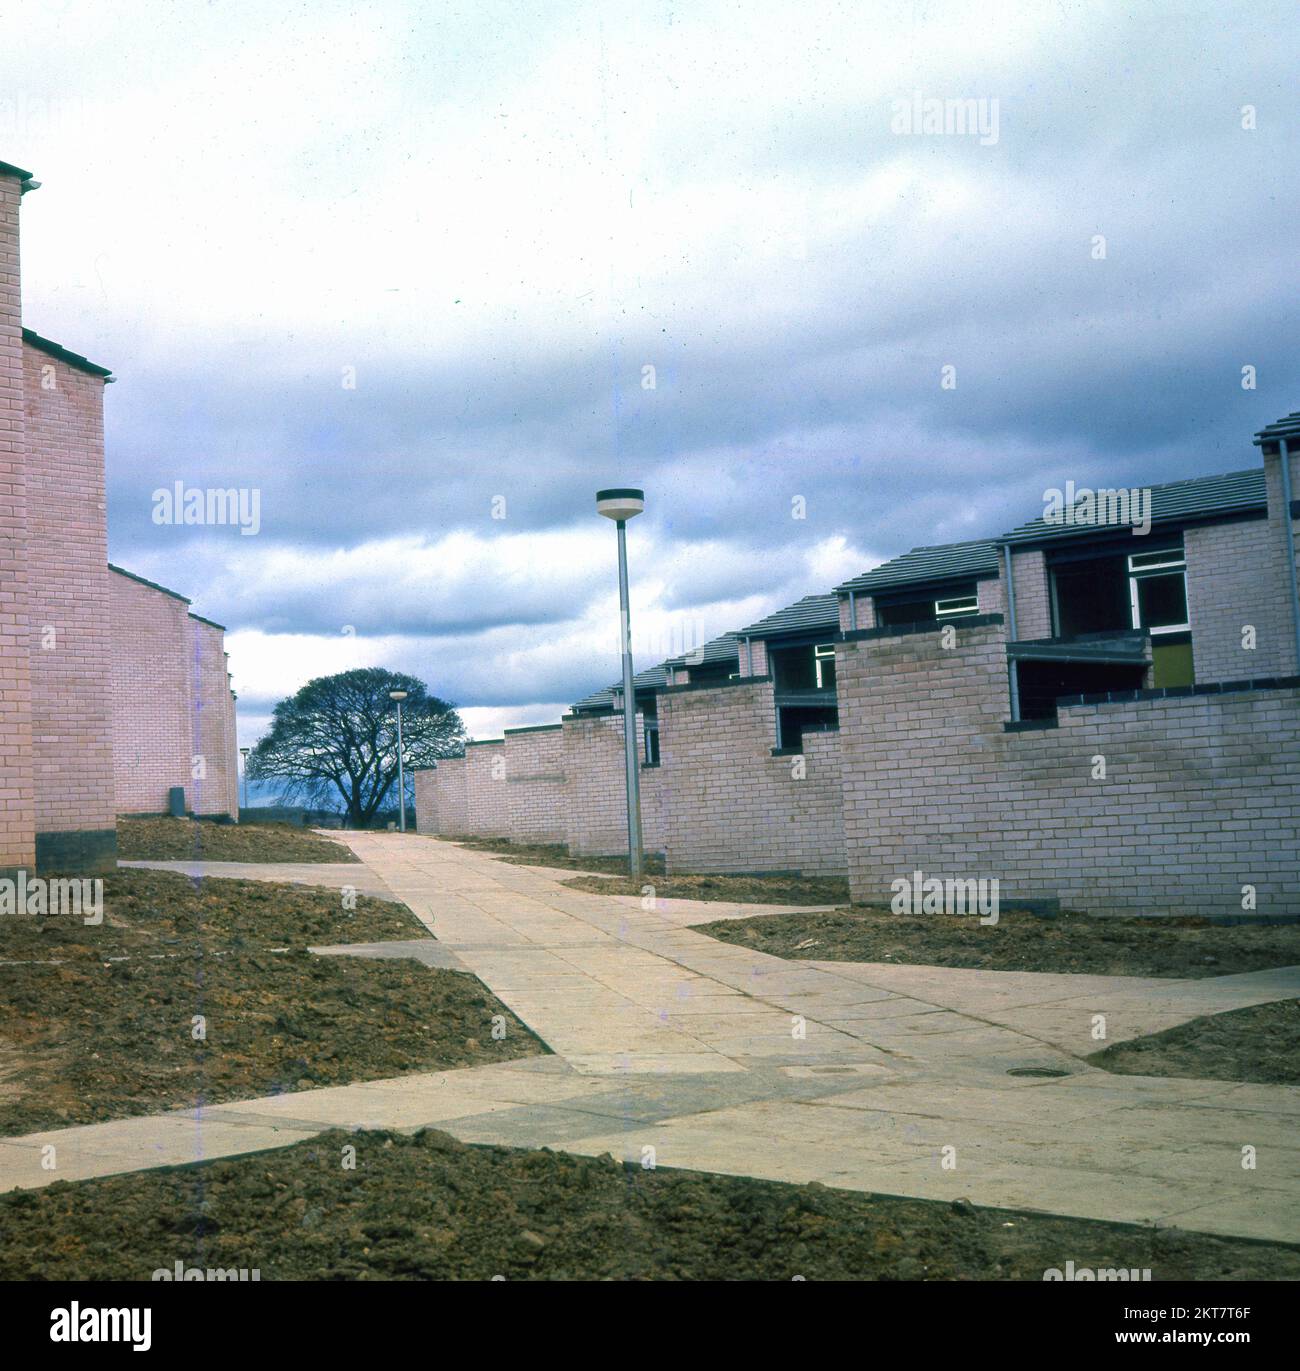 1970s, histórico, vista exterior de una finca de viviendas recientemente construida de la época, mostrando edificios y camino, la llamada 'arquitectura moderna', combinando ladrillos de luz y paneles de ventana, Inglaterra, Reino Unido. Foto de stock